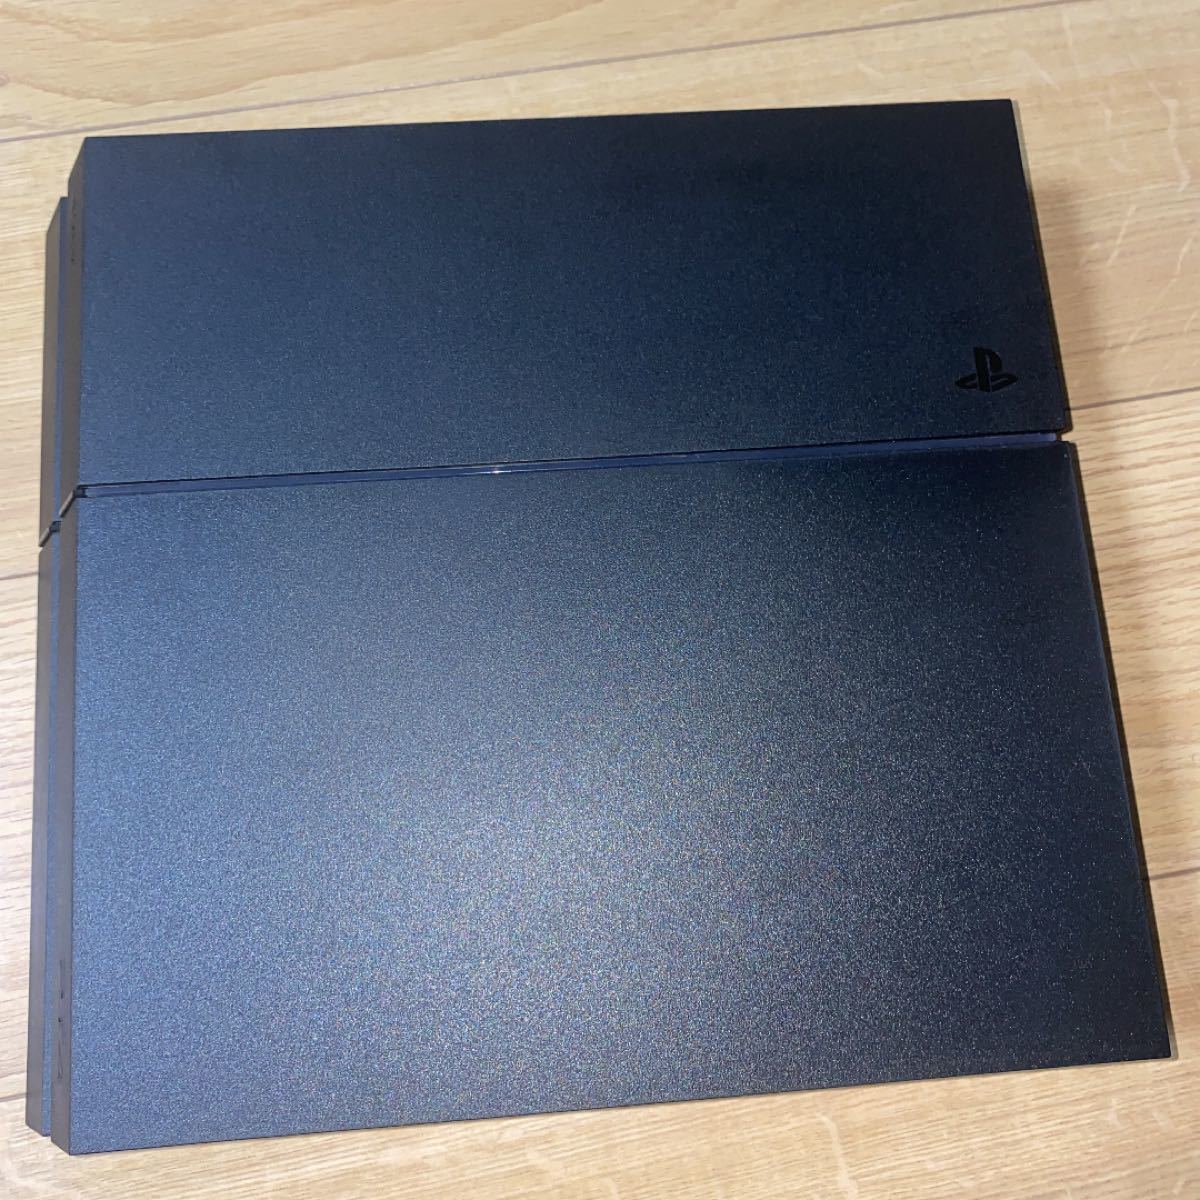 PlayStation4 cuh-1200A